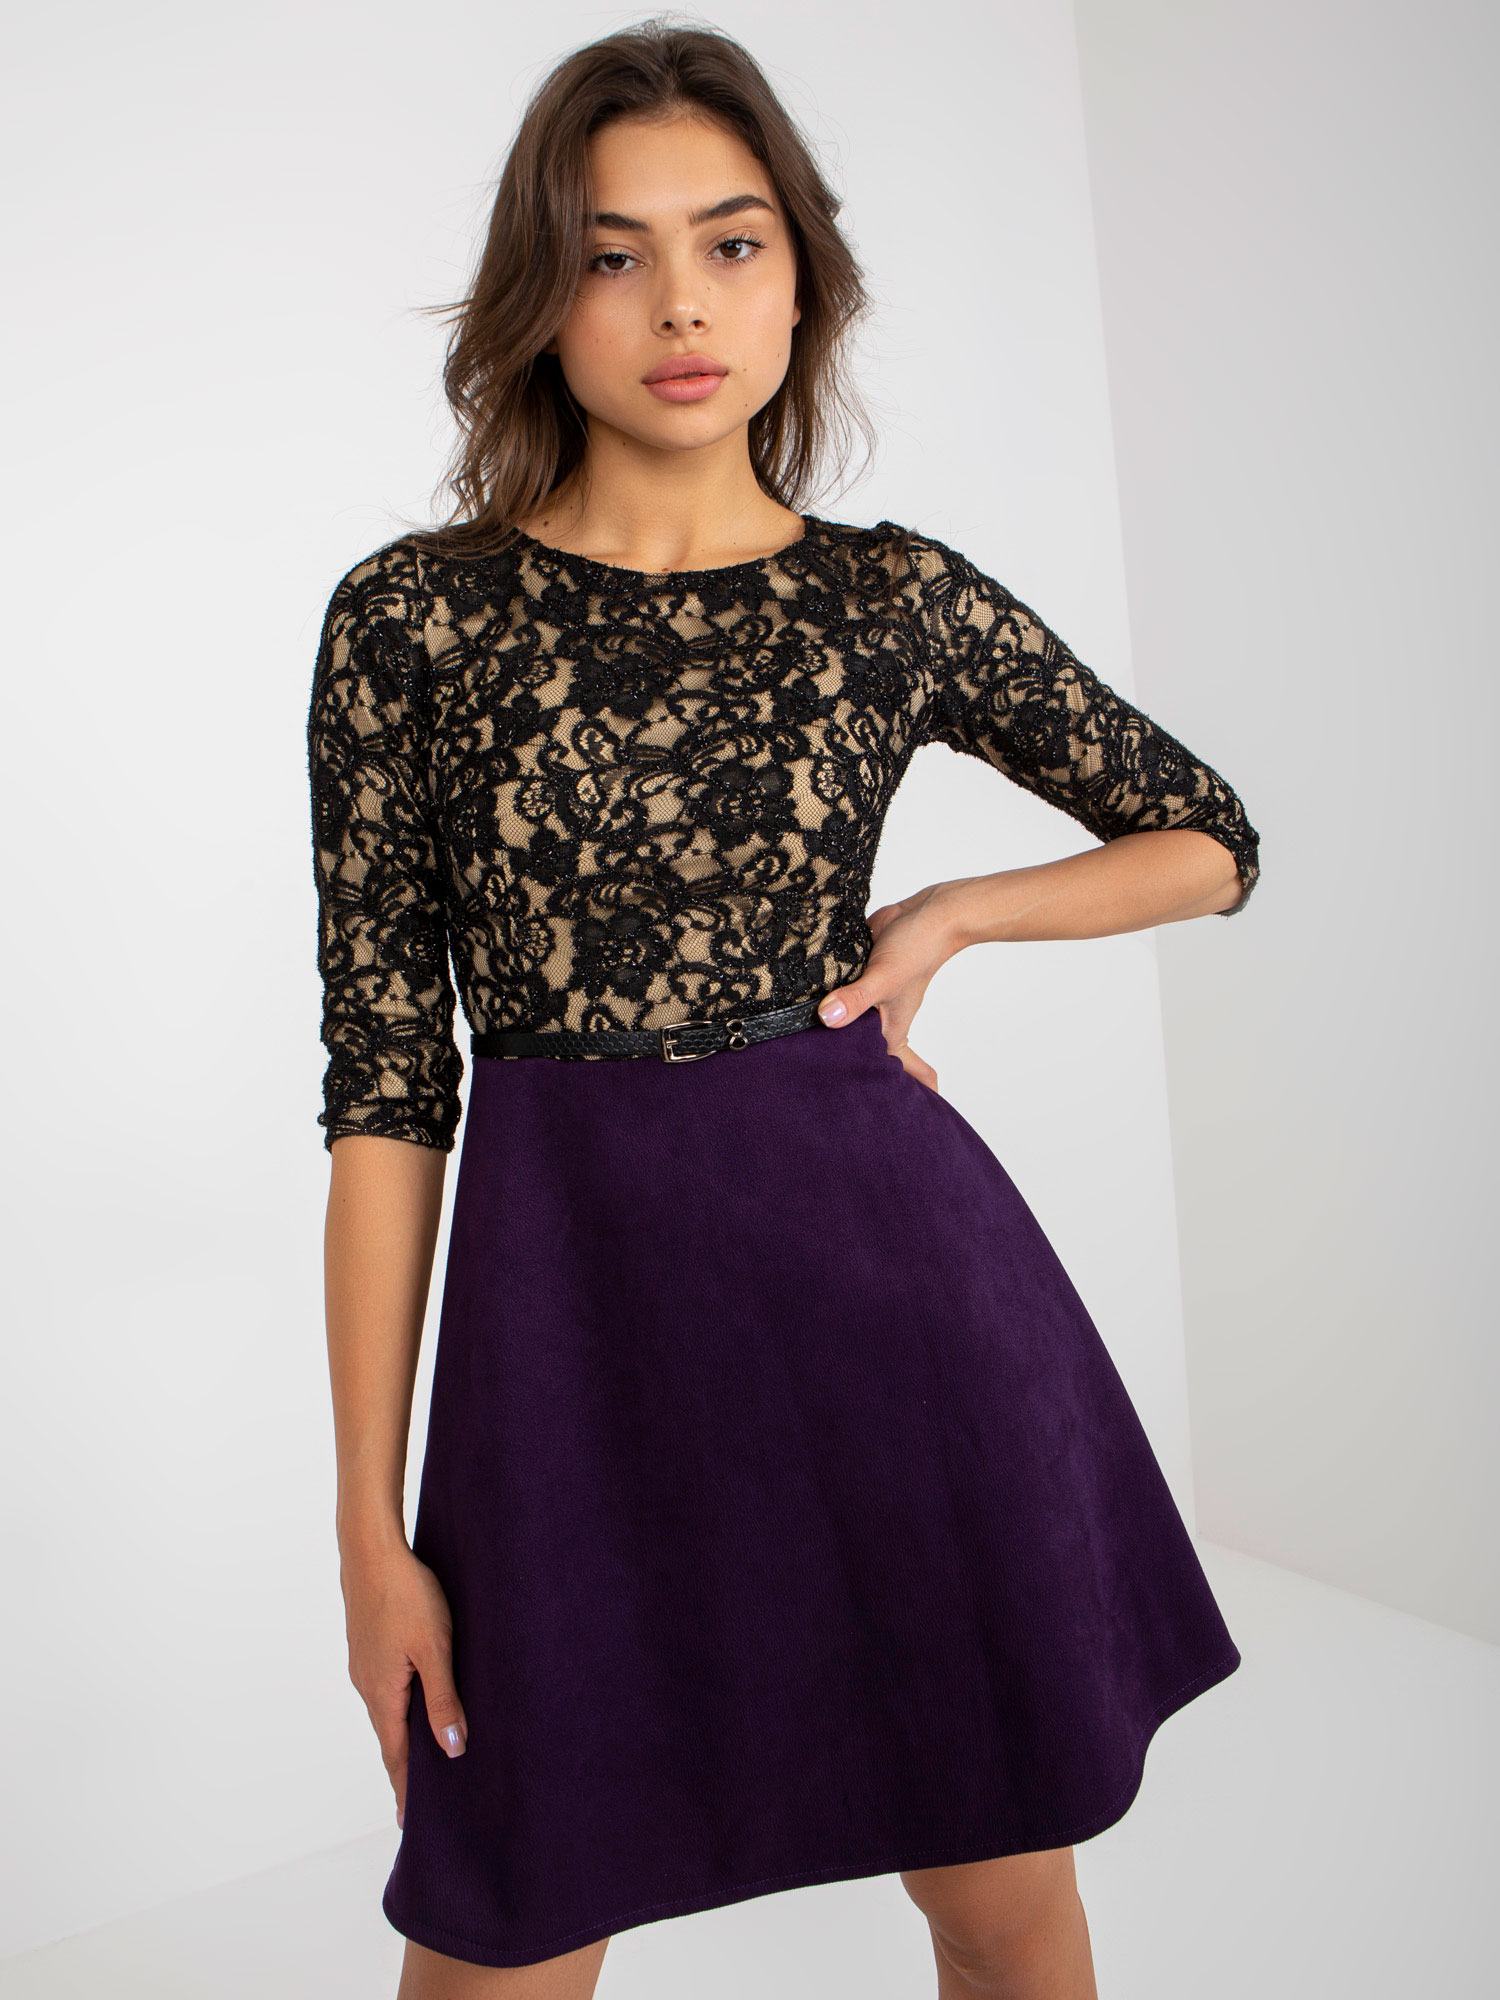 Tmavofialové šaty s čipkovým topom -LK-SK-506582.04P-dark purple Veľkosť: 38